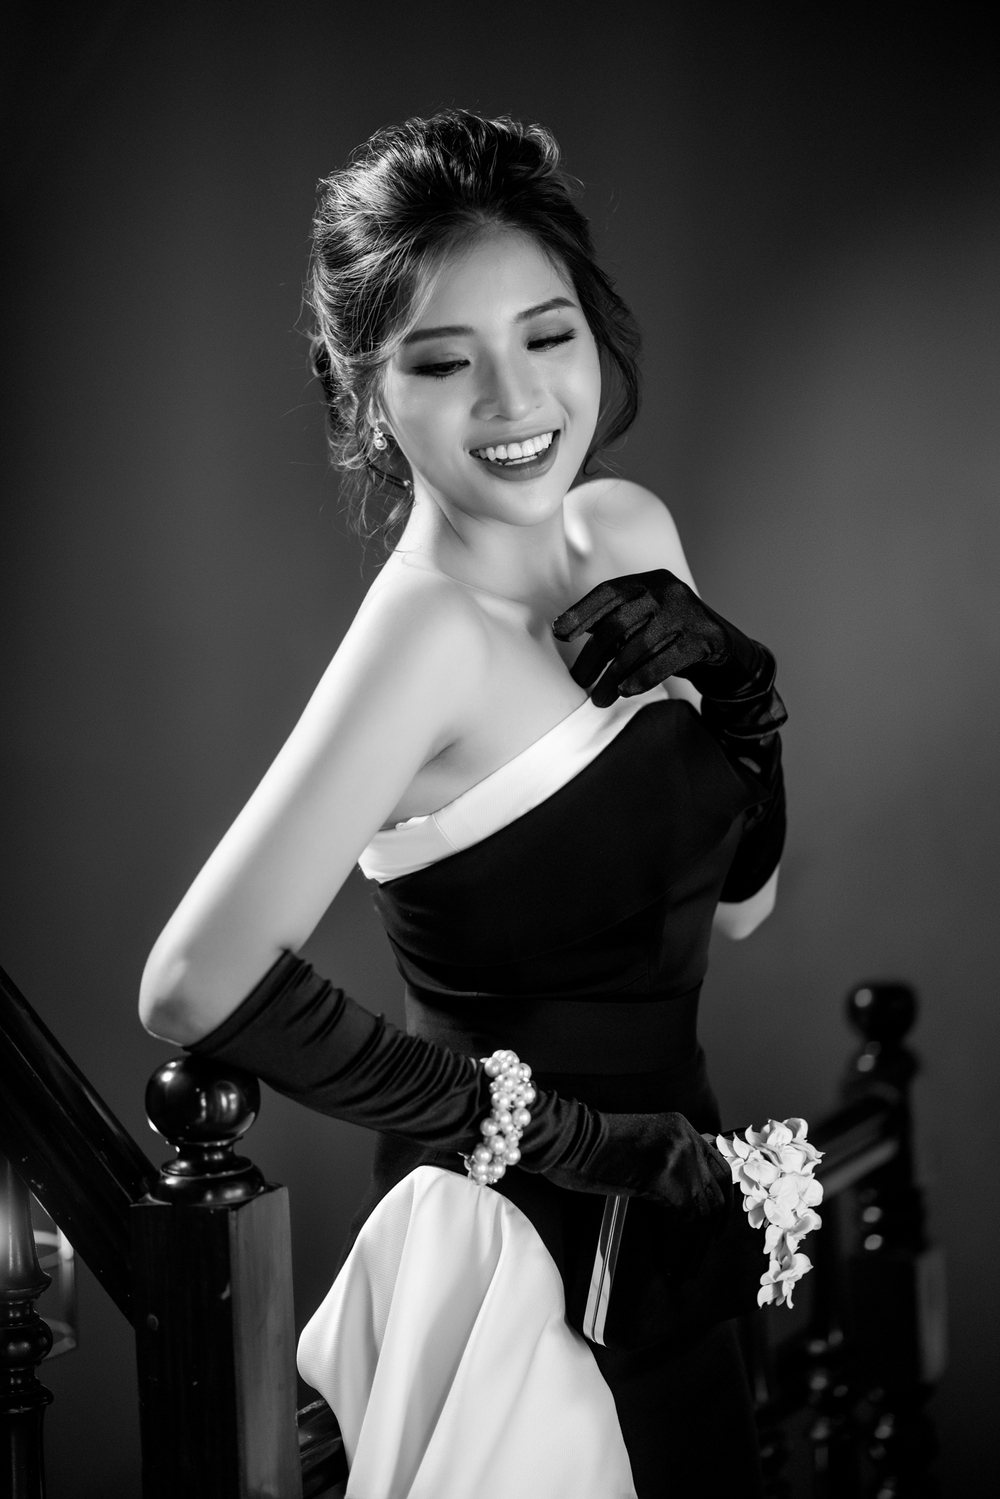 Hoa hậu Phan Hoàng Thu kiêu kỳ và gợi cảm trong bộ ảnh mới - Ảnh 2.